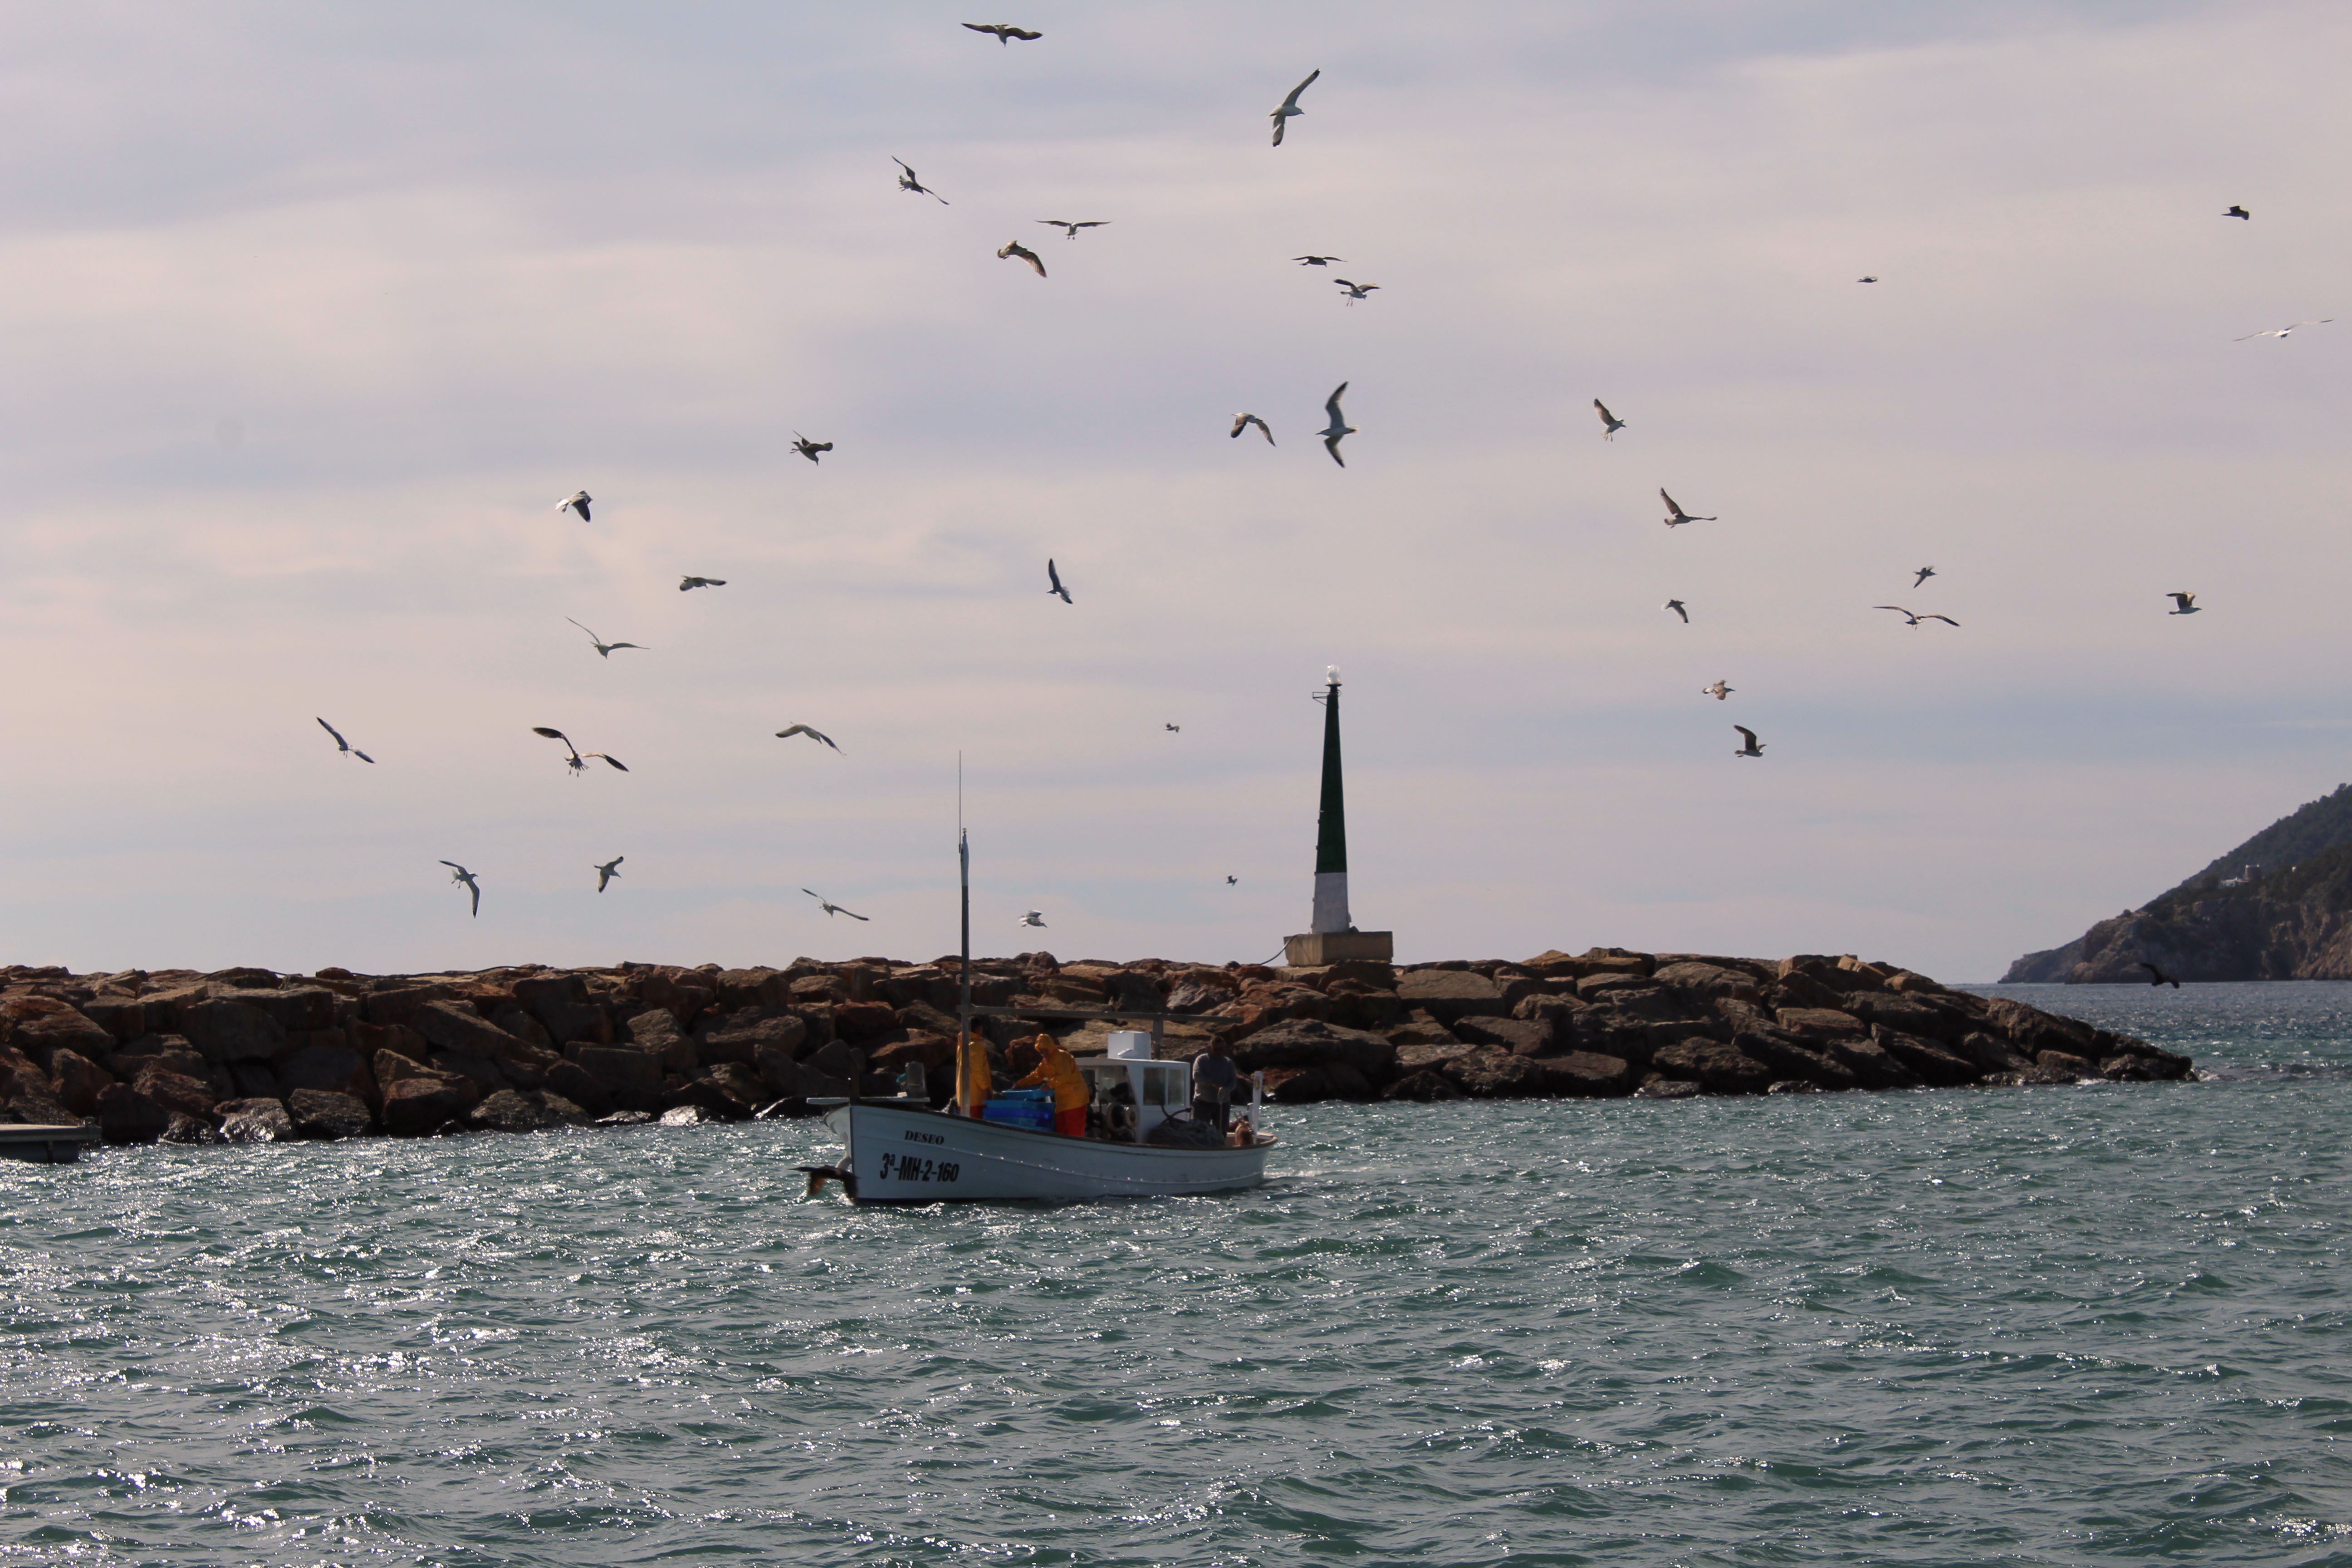 20210325 Imagen archivo pescadores entrando al puerto de Santa Eulària